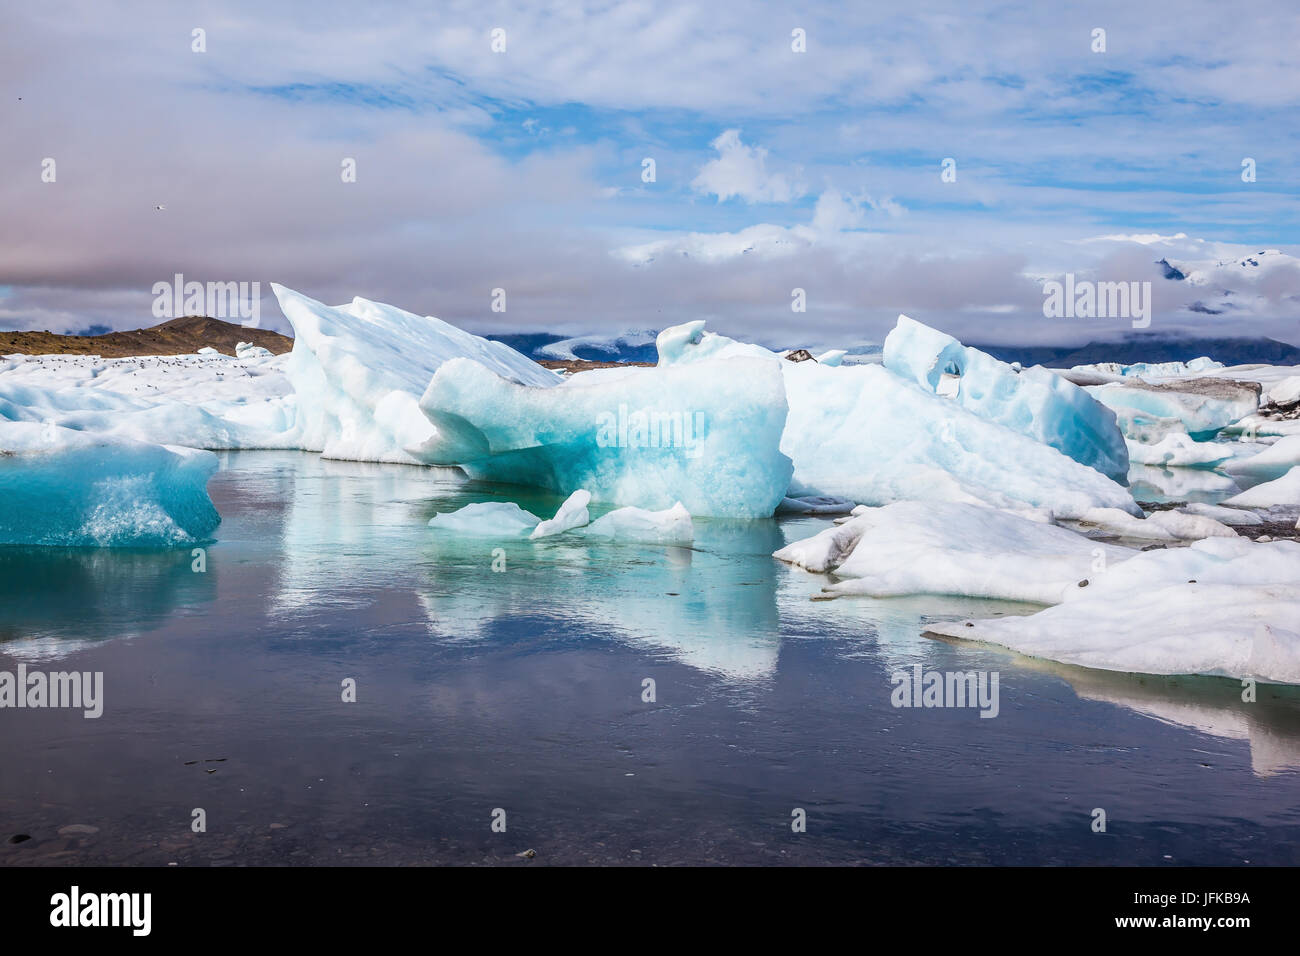 La glace flottante et les nuages reflètent dans l'eau lisse Banque D'Images